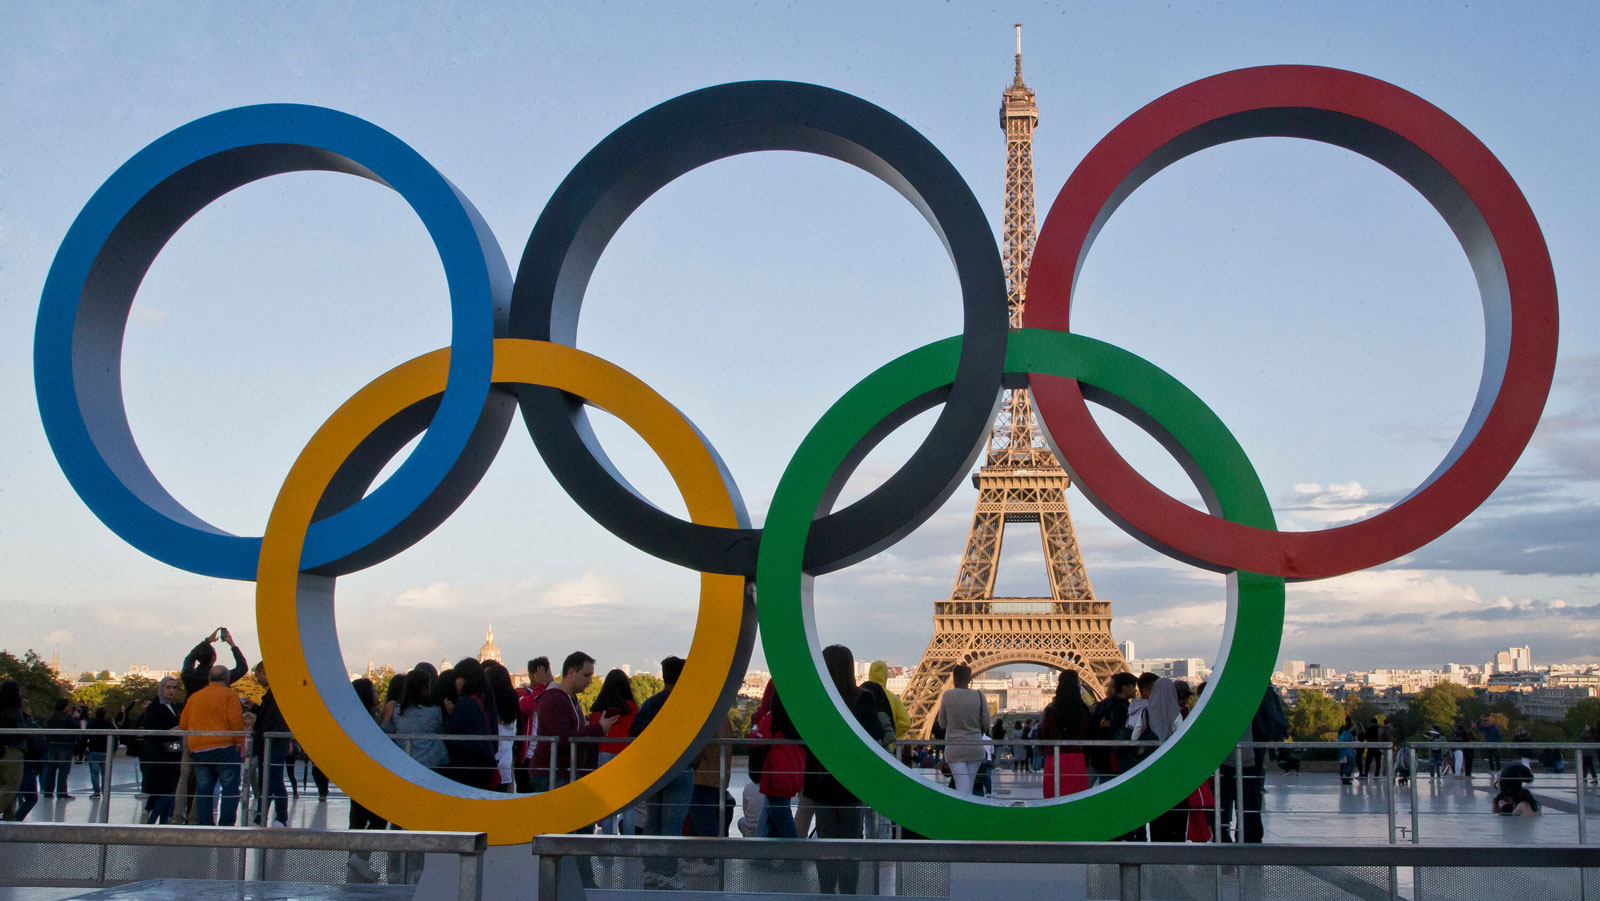 اللجنة المنظمة لأولمبياد باريس 2024 تعلن طرح 400 ألف تذكرة للبيع خلال أيام